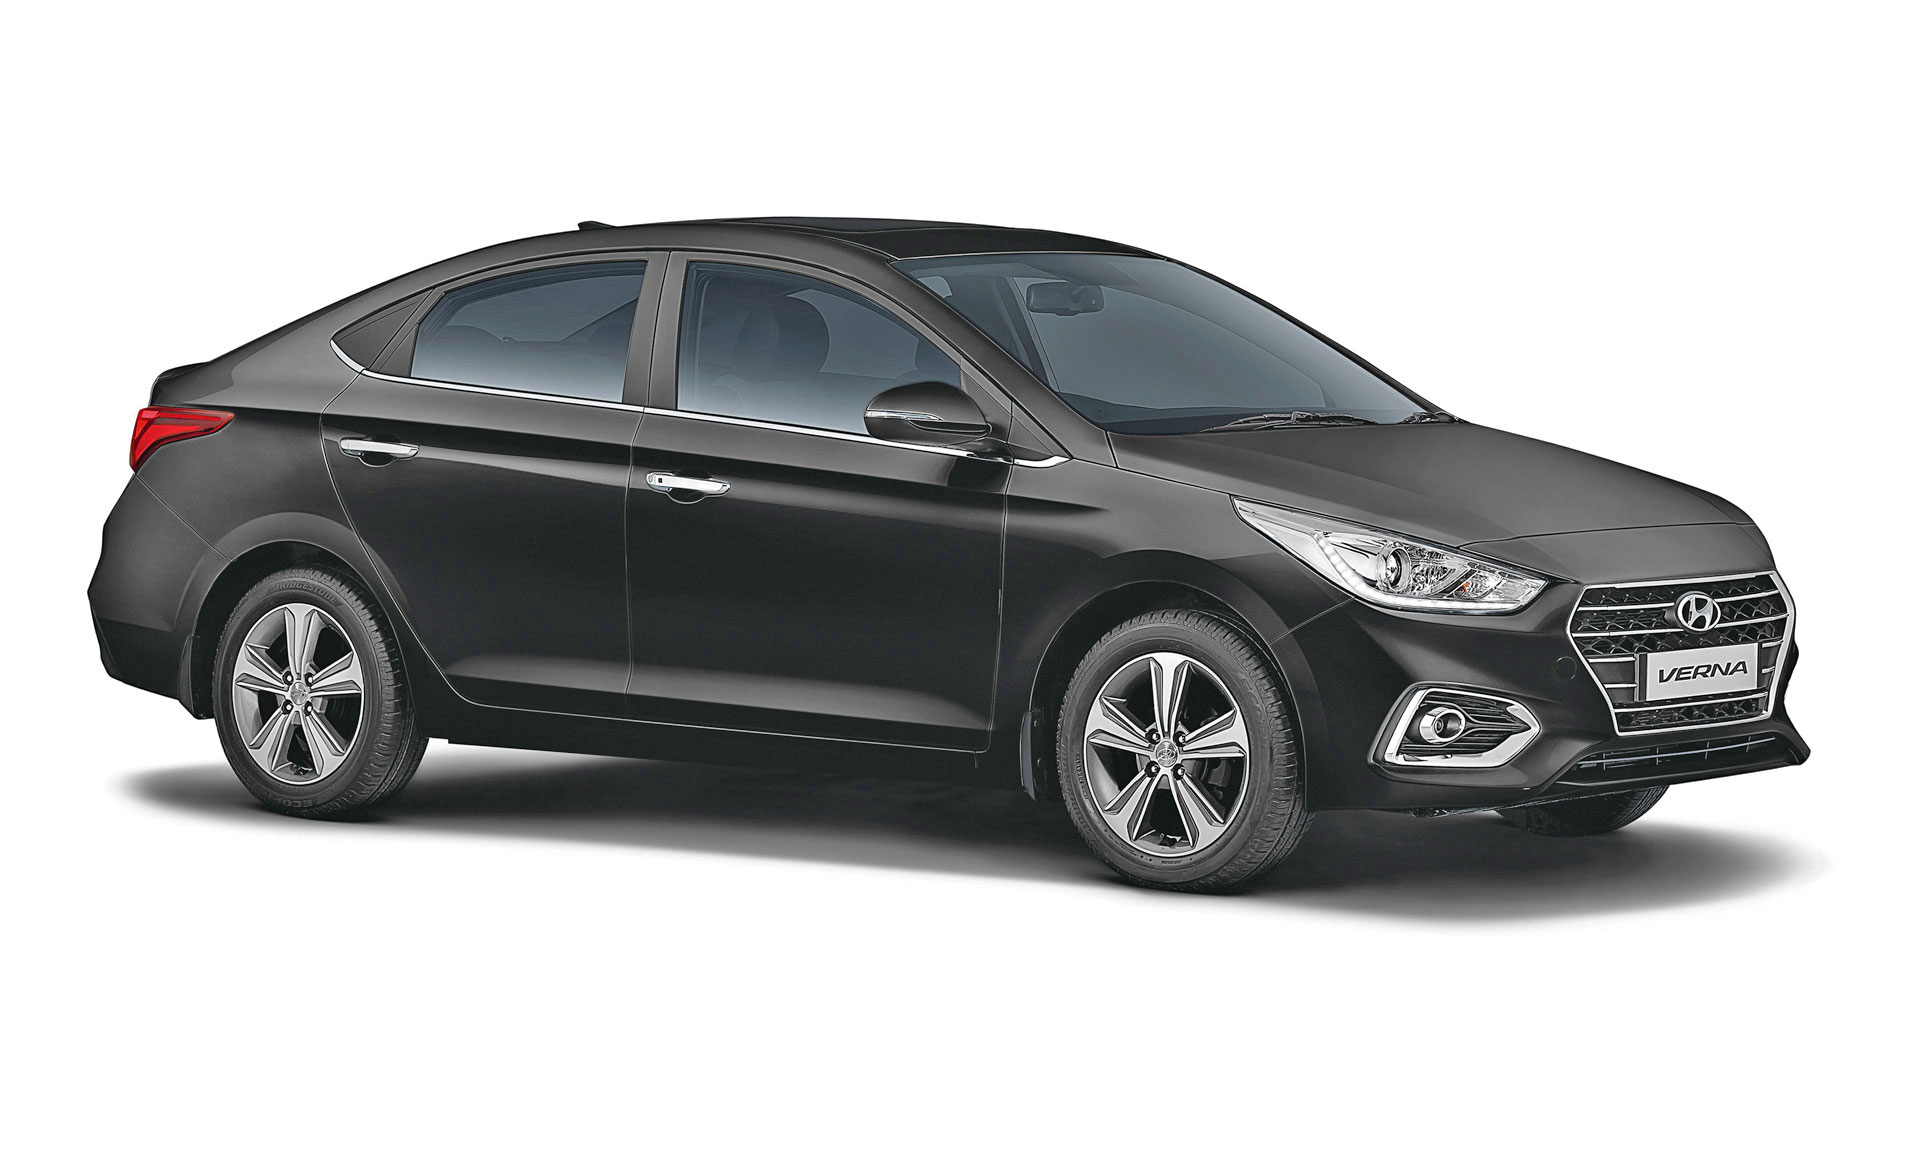 Hyundai Verna Car Images And Price